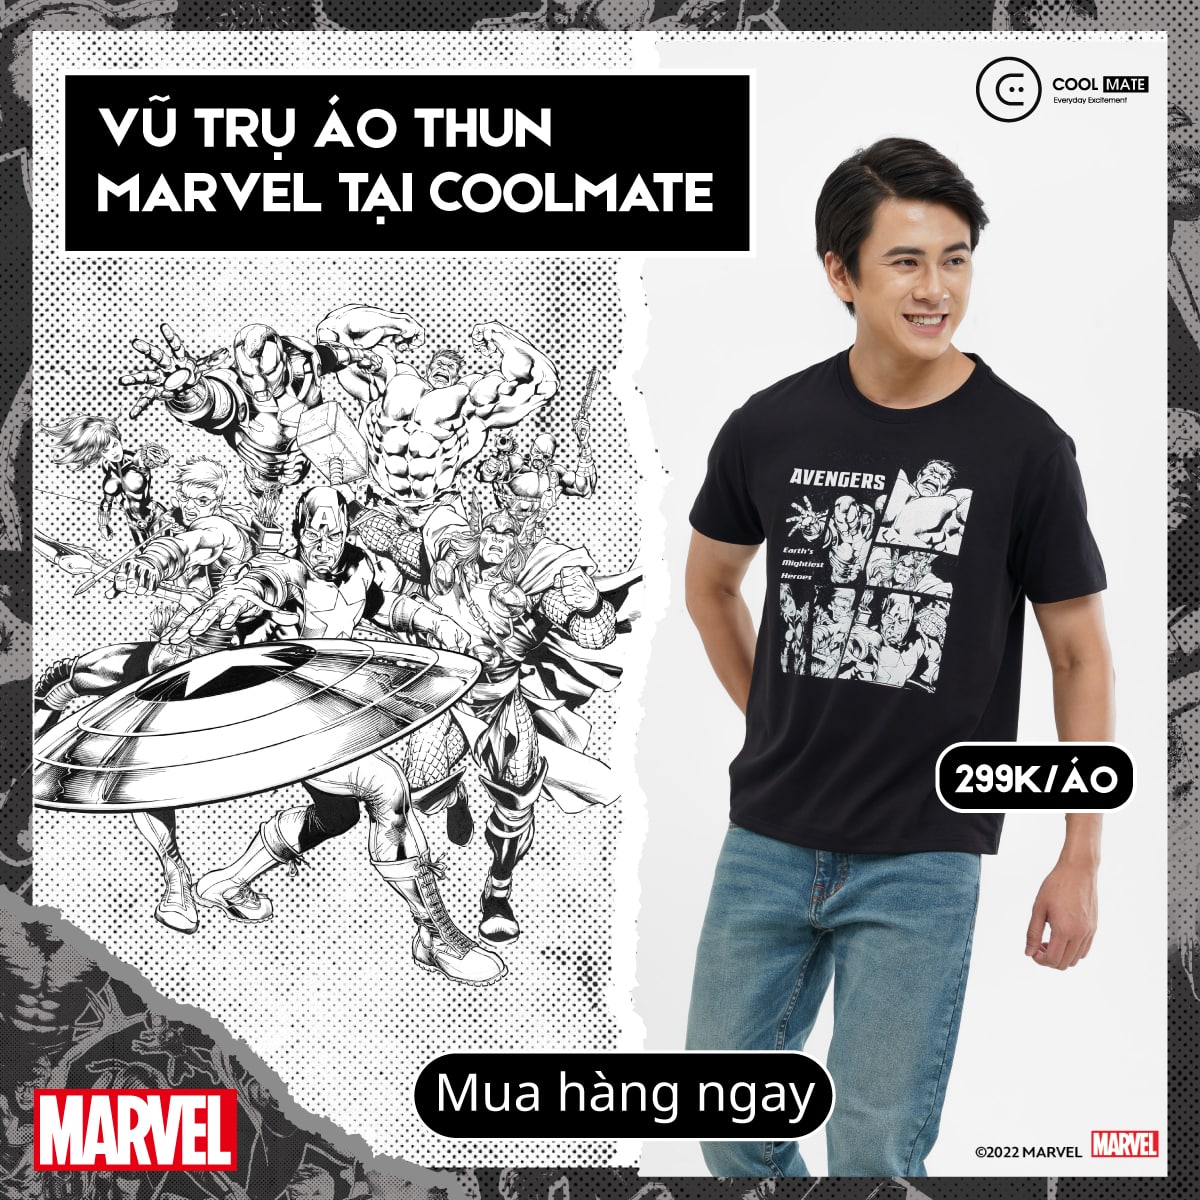 Coolmate hợp tác với The Walt Disney Việt Nam ra mắt Vũ trụ áo thun Marvel - Ảnh 3.